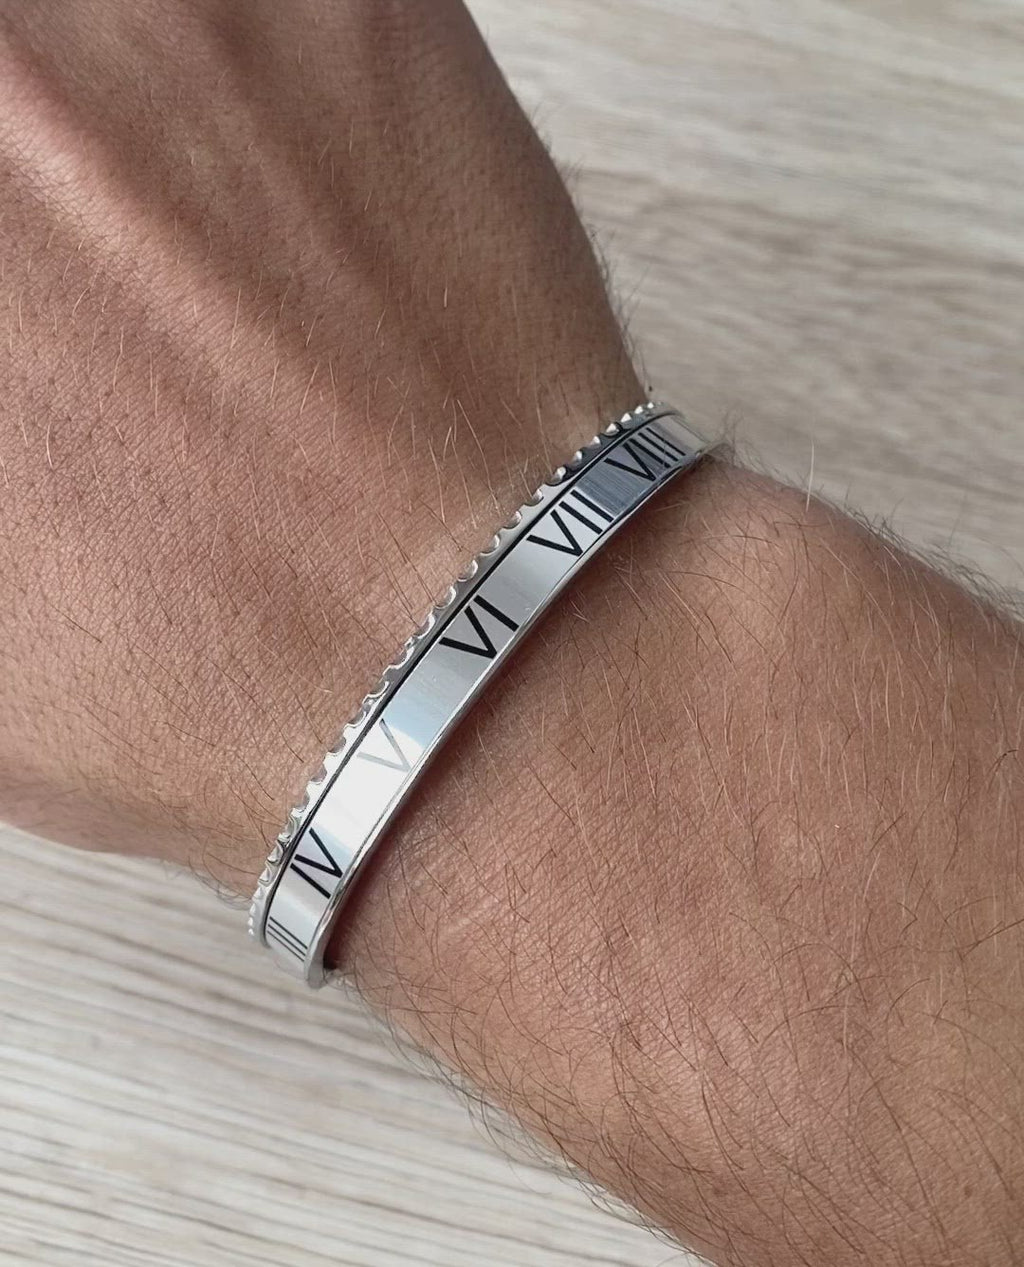 Video showing the Roman Speed bracelet silver edition by Emils Jewellery Stainless steel bracelet. Bezel style bracelet